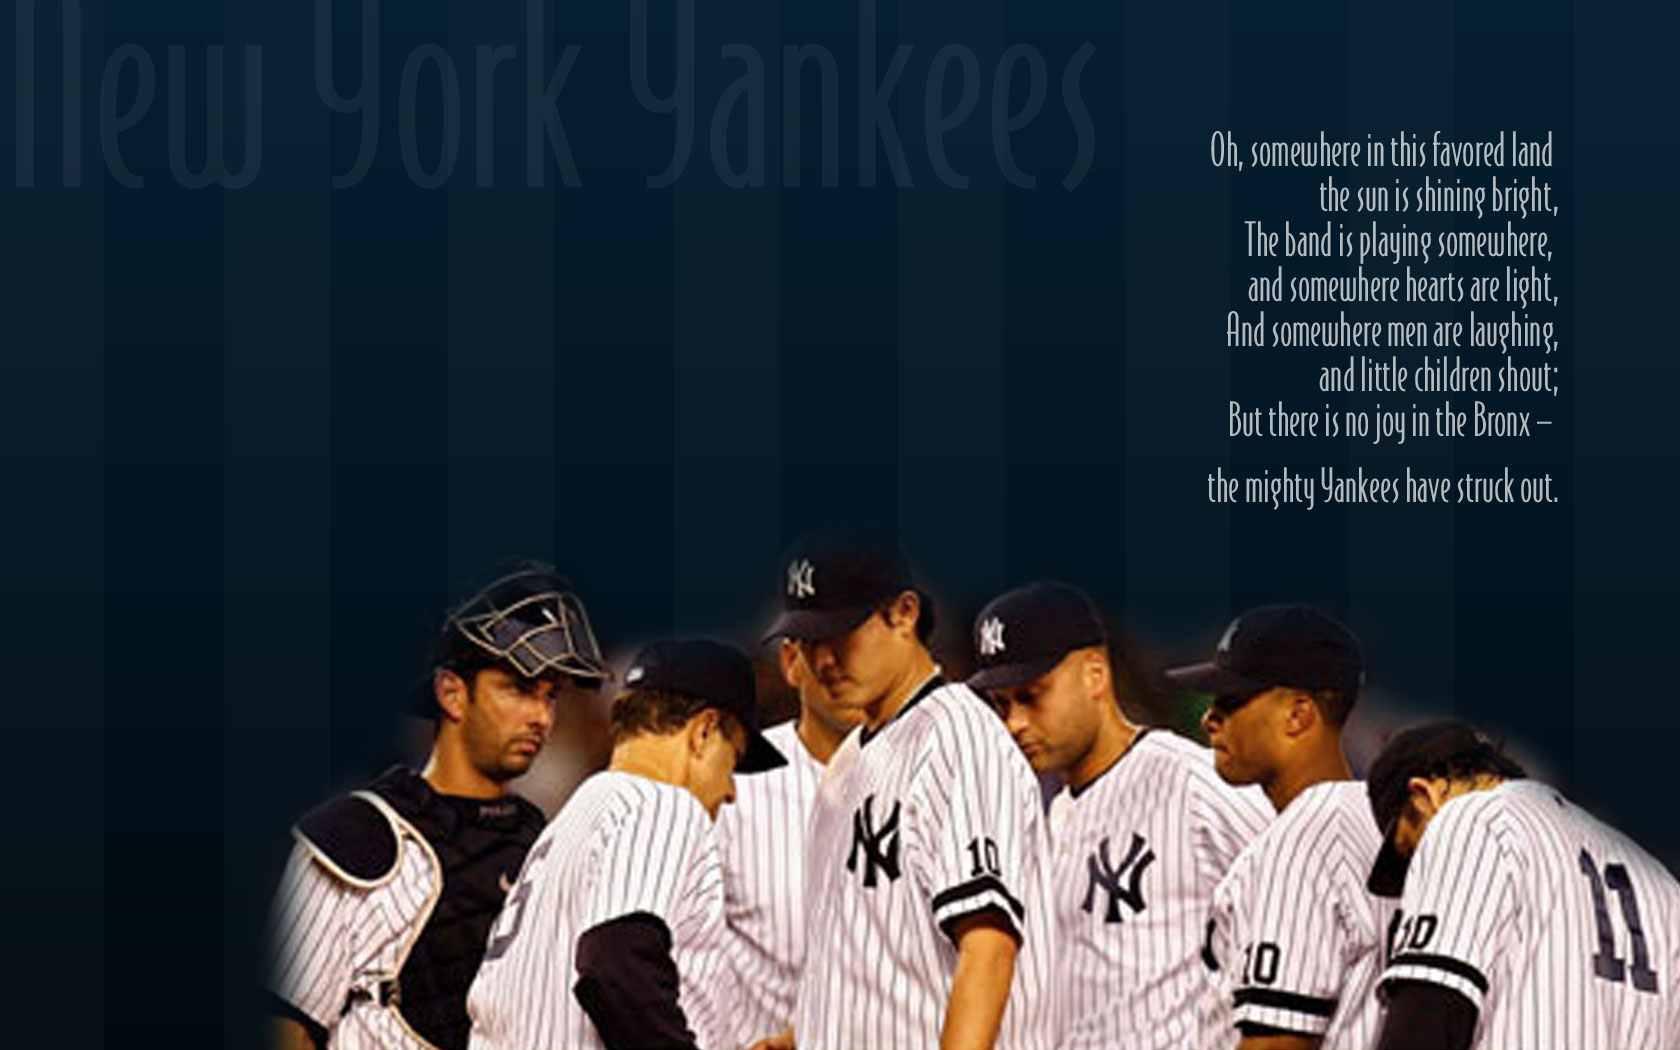 Yankees New York Wallpaper